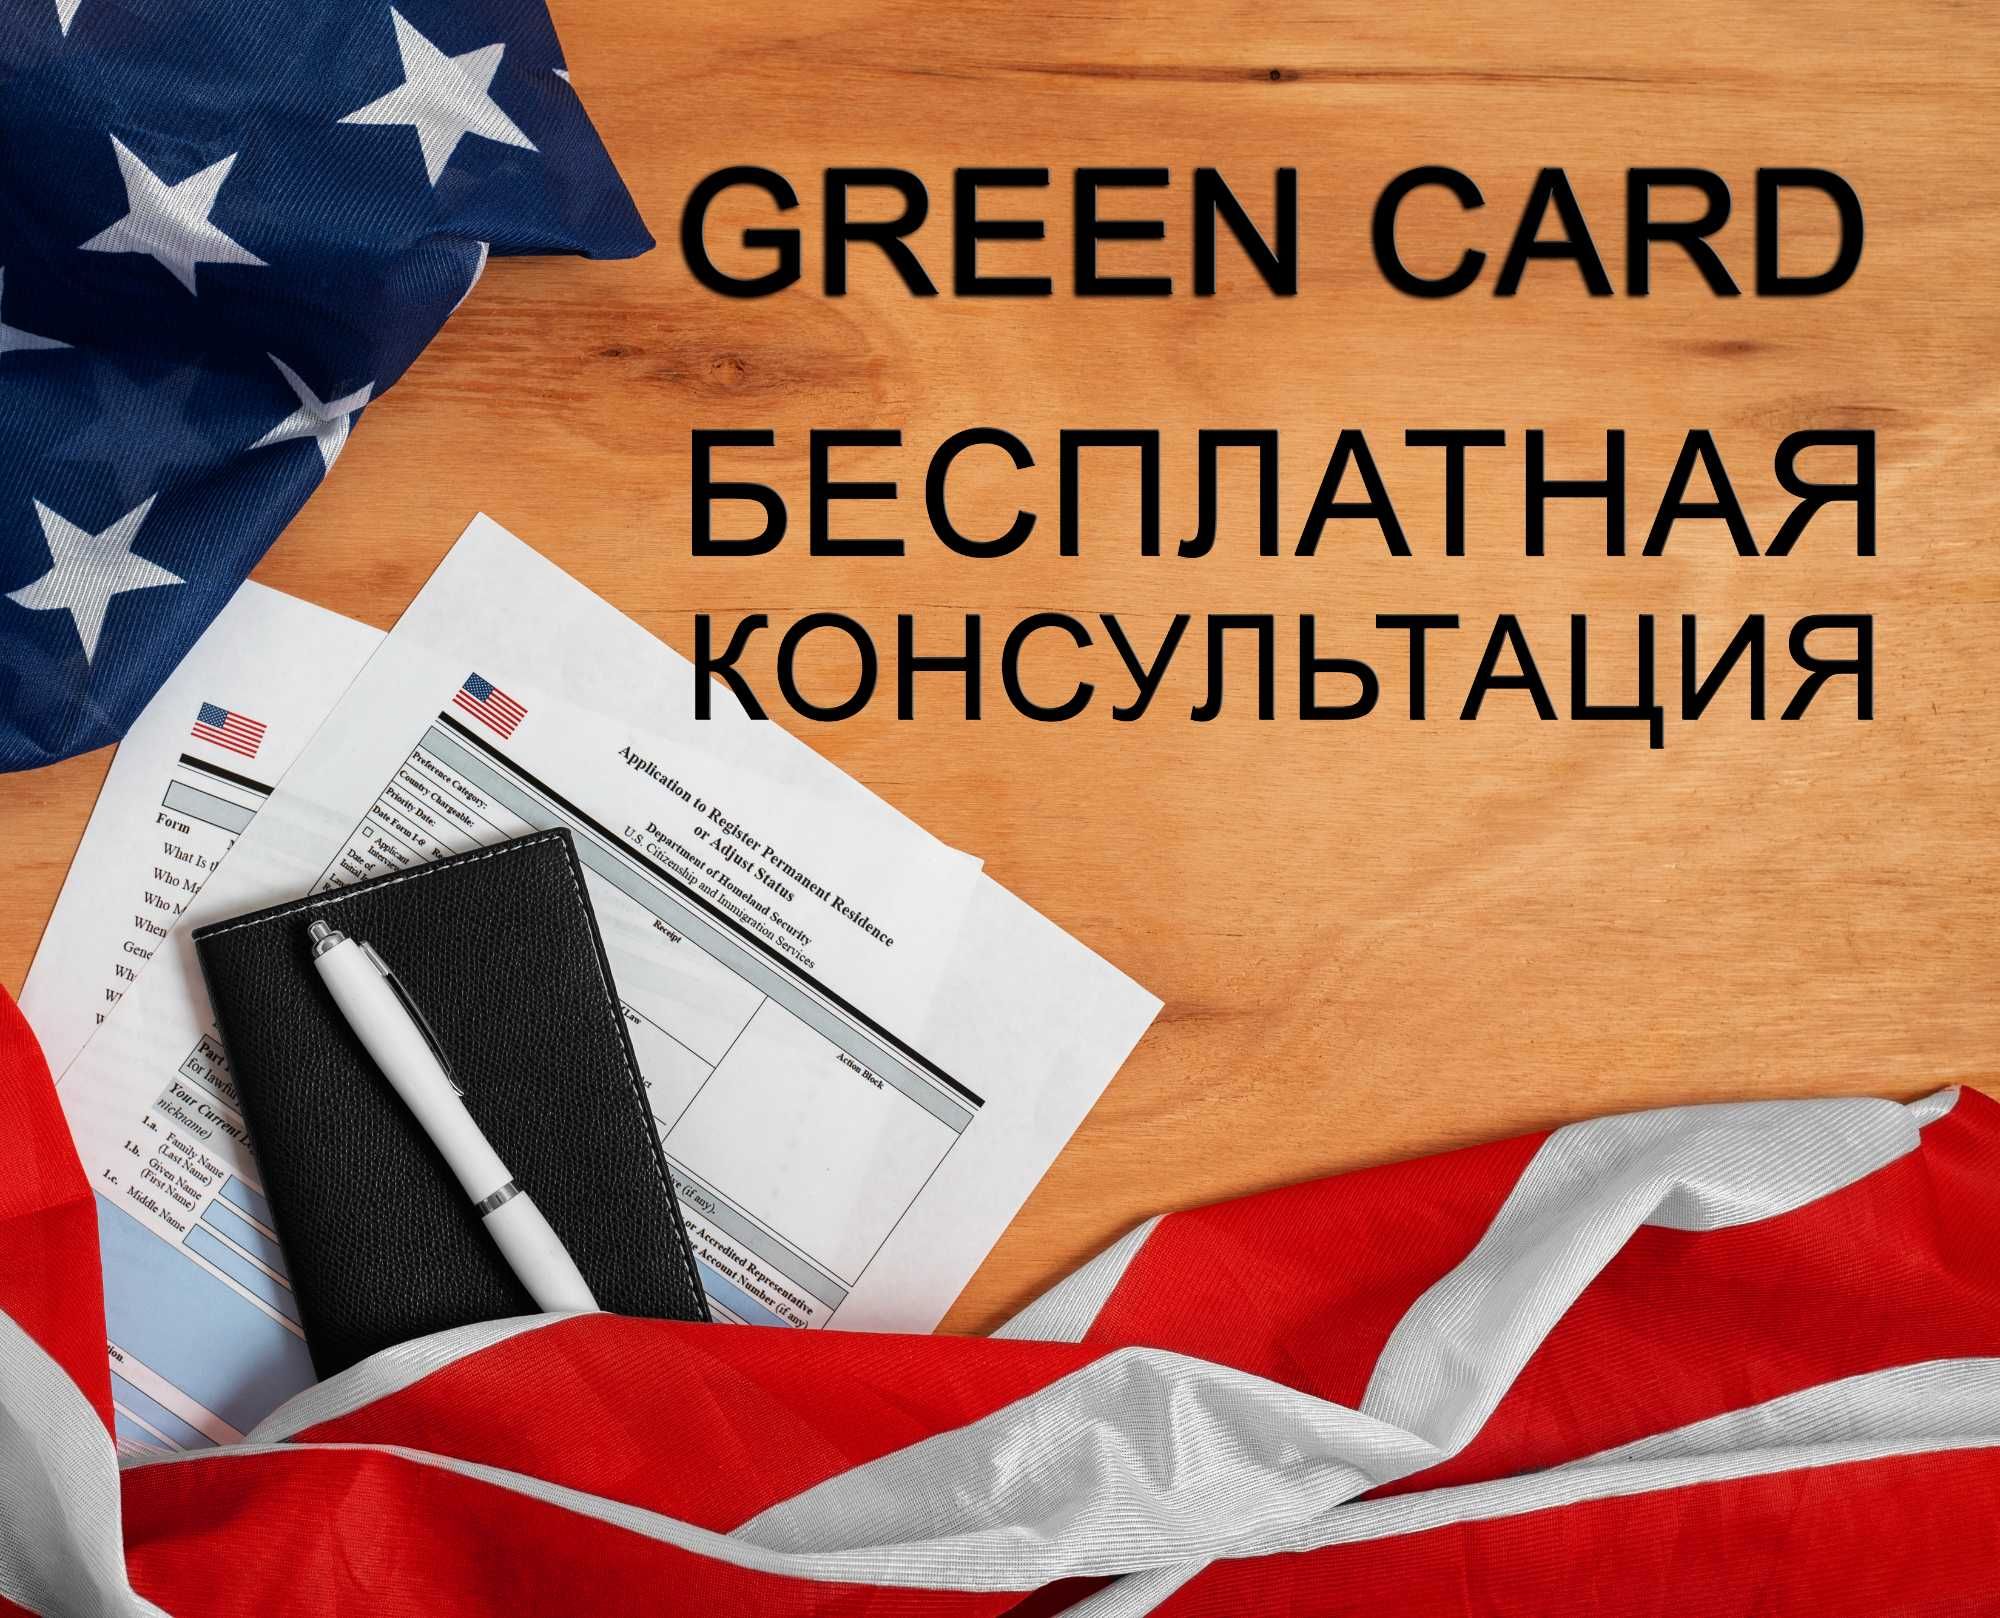 Green Card - Юридическая помощь.